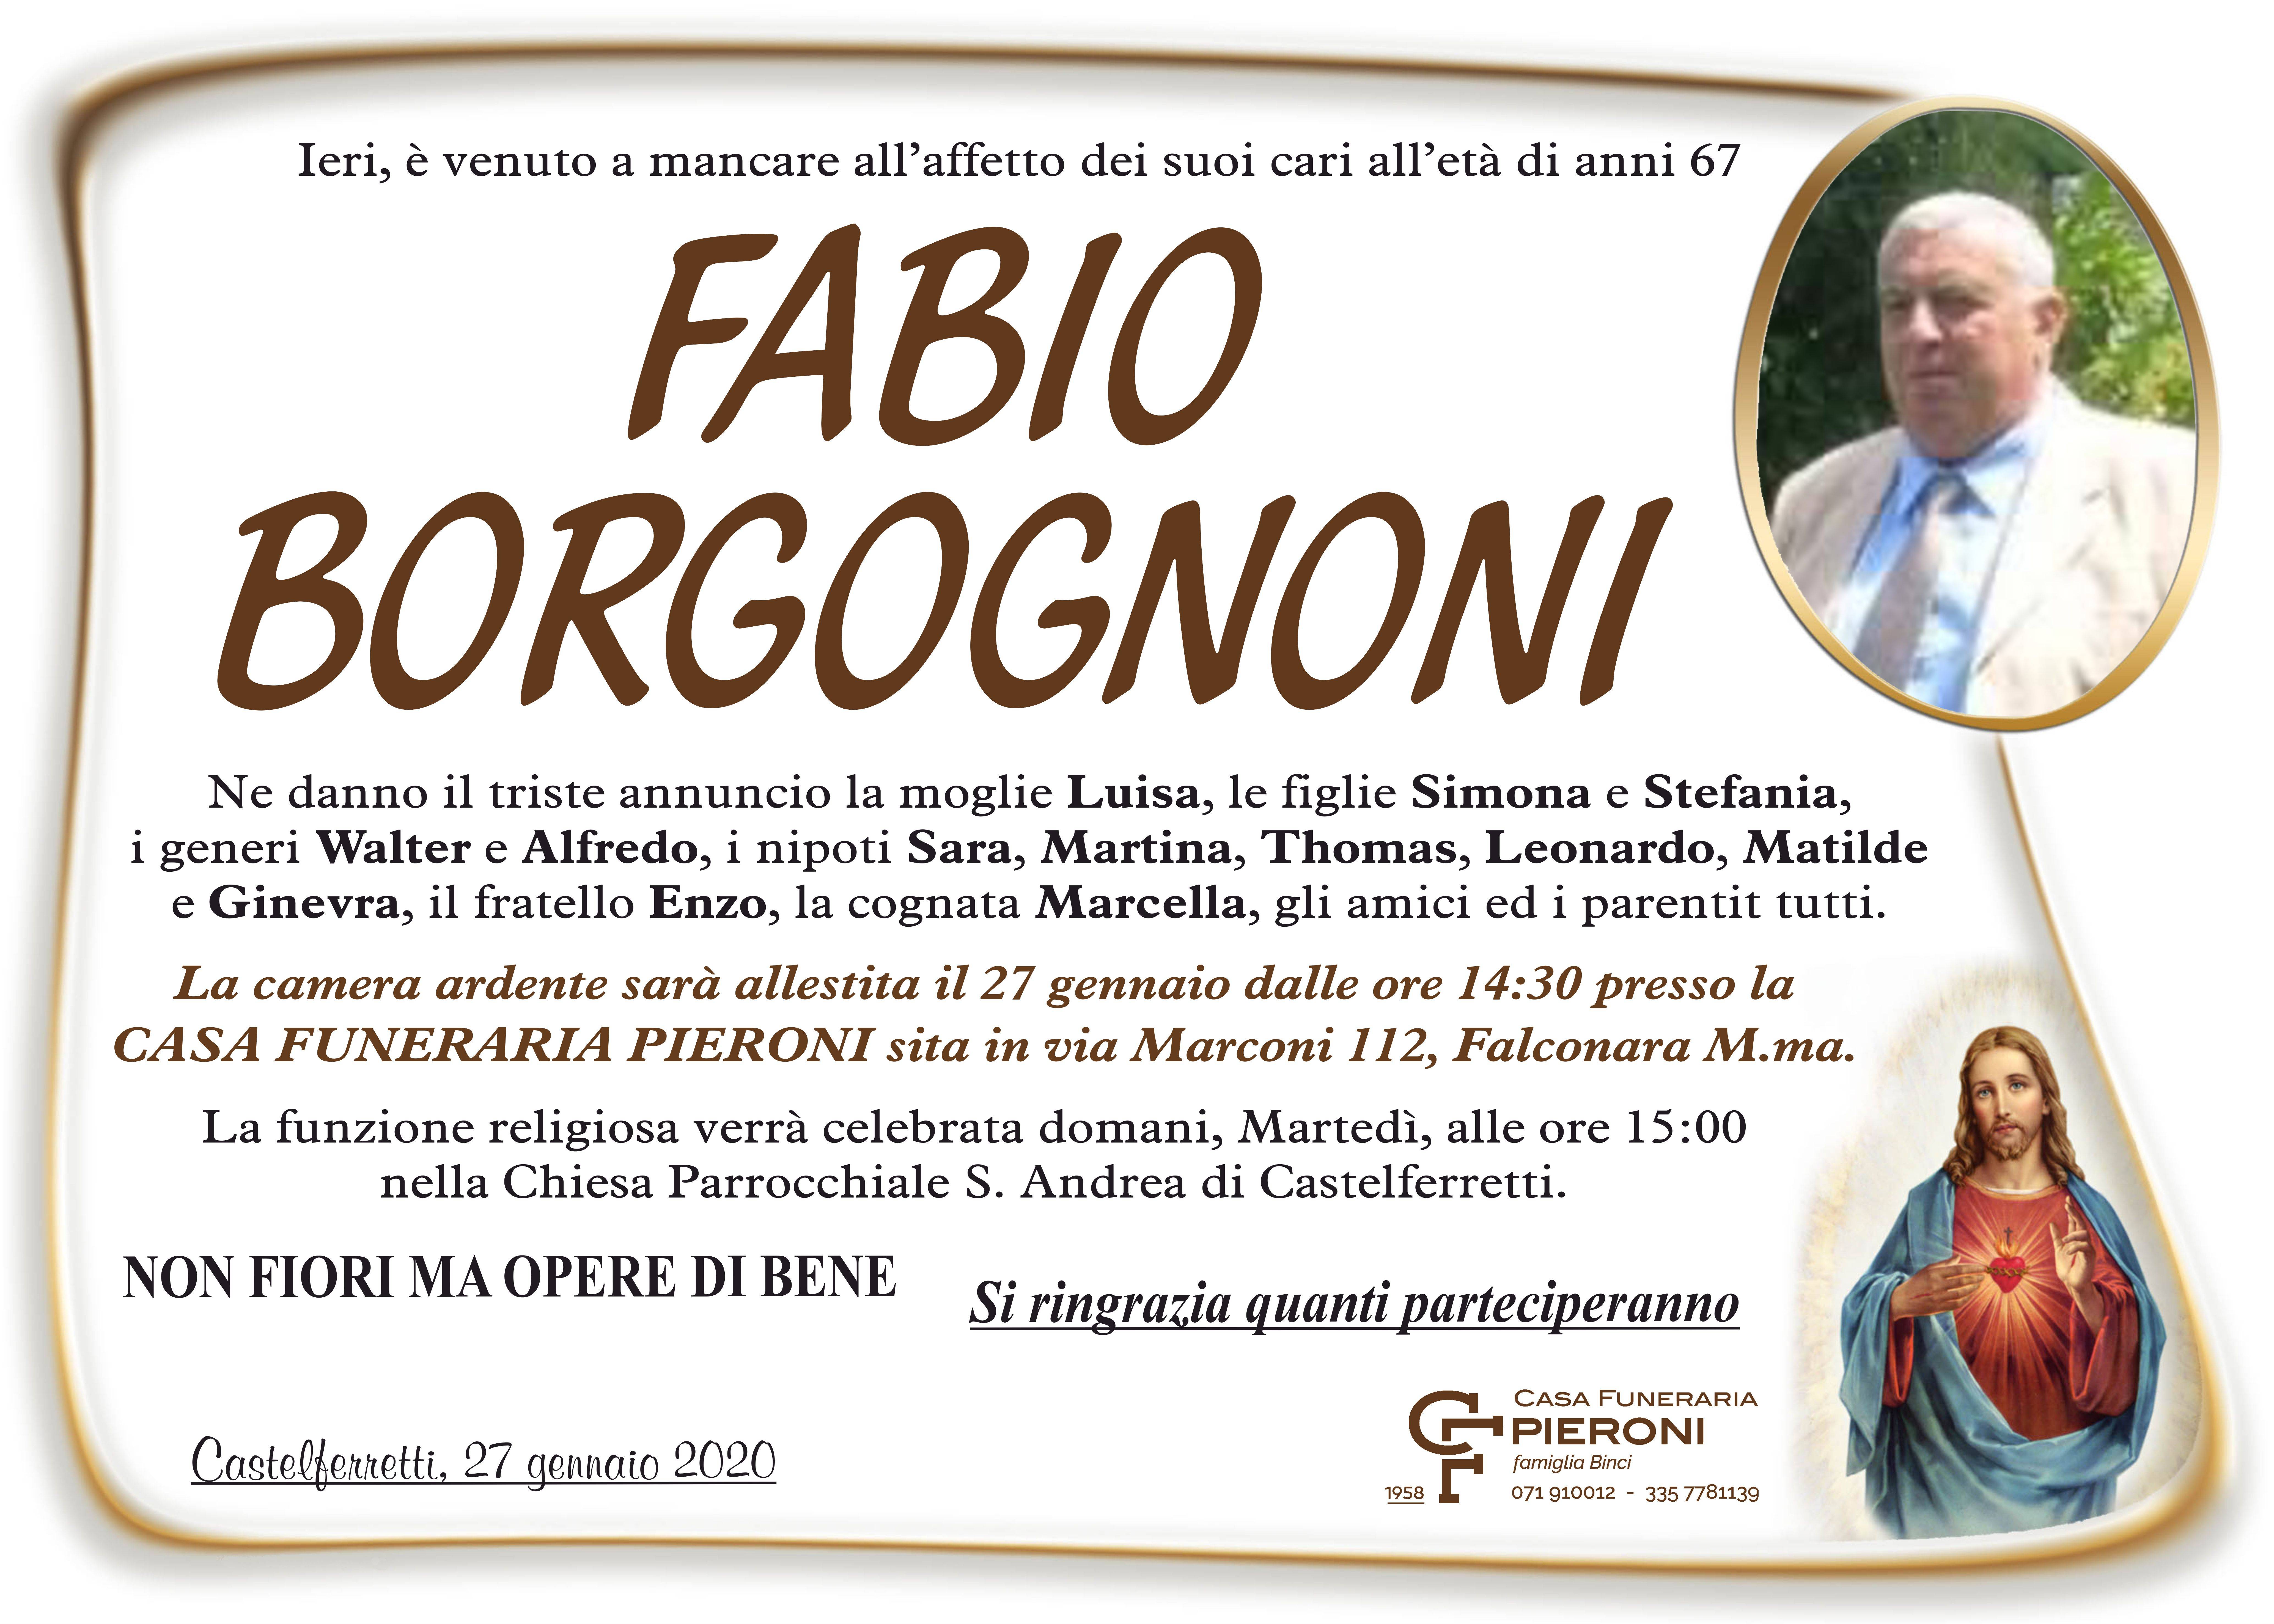 Fabio Borgognoni